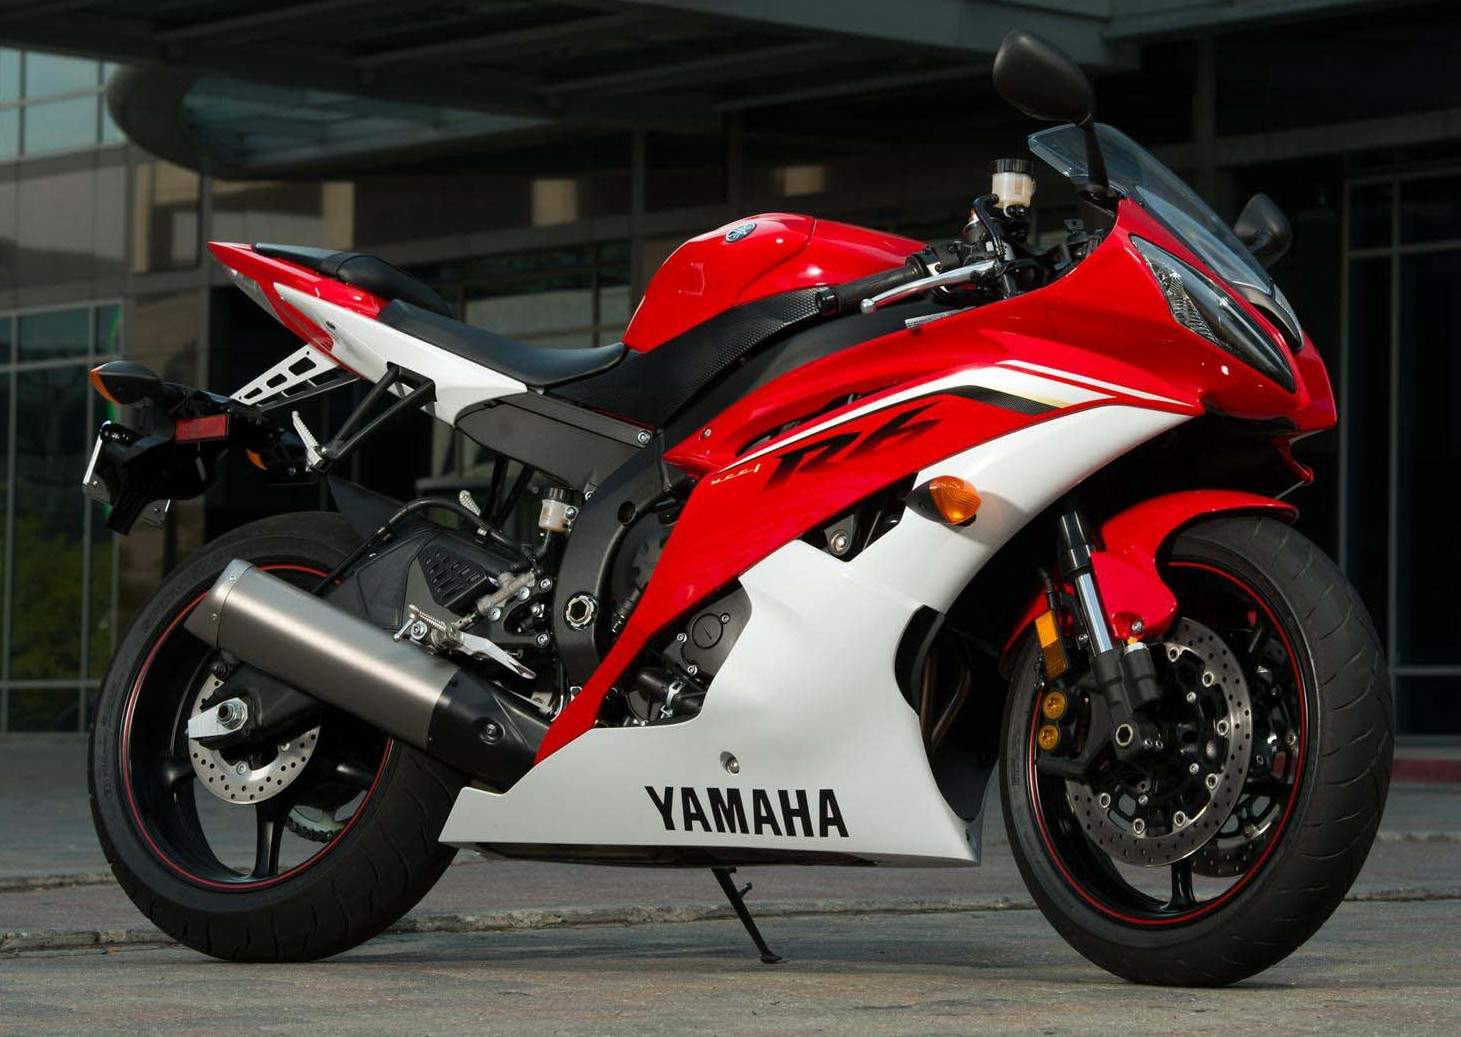 Мотоцикл Yamaha YZF 600 R6 2013 фото